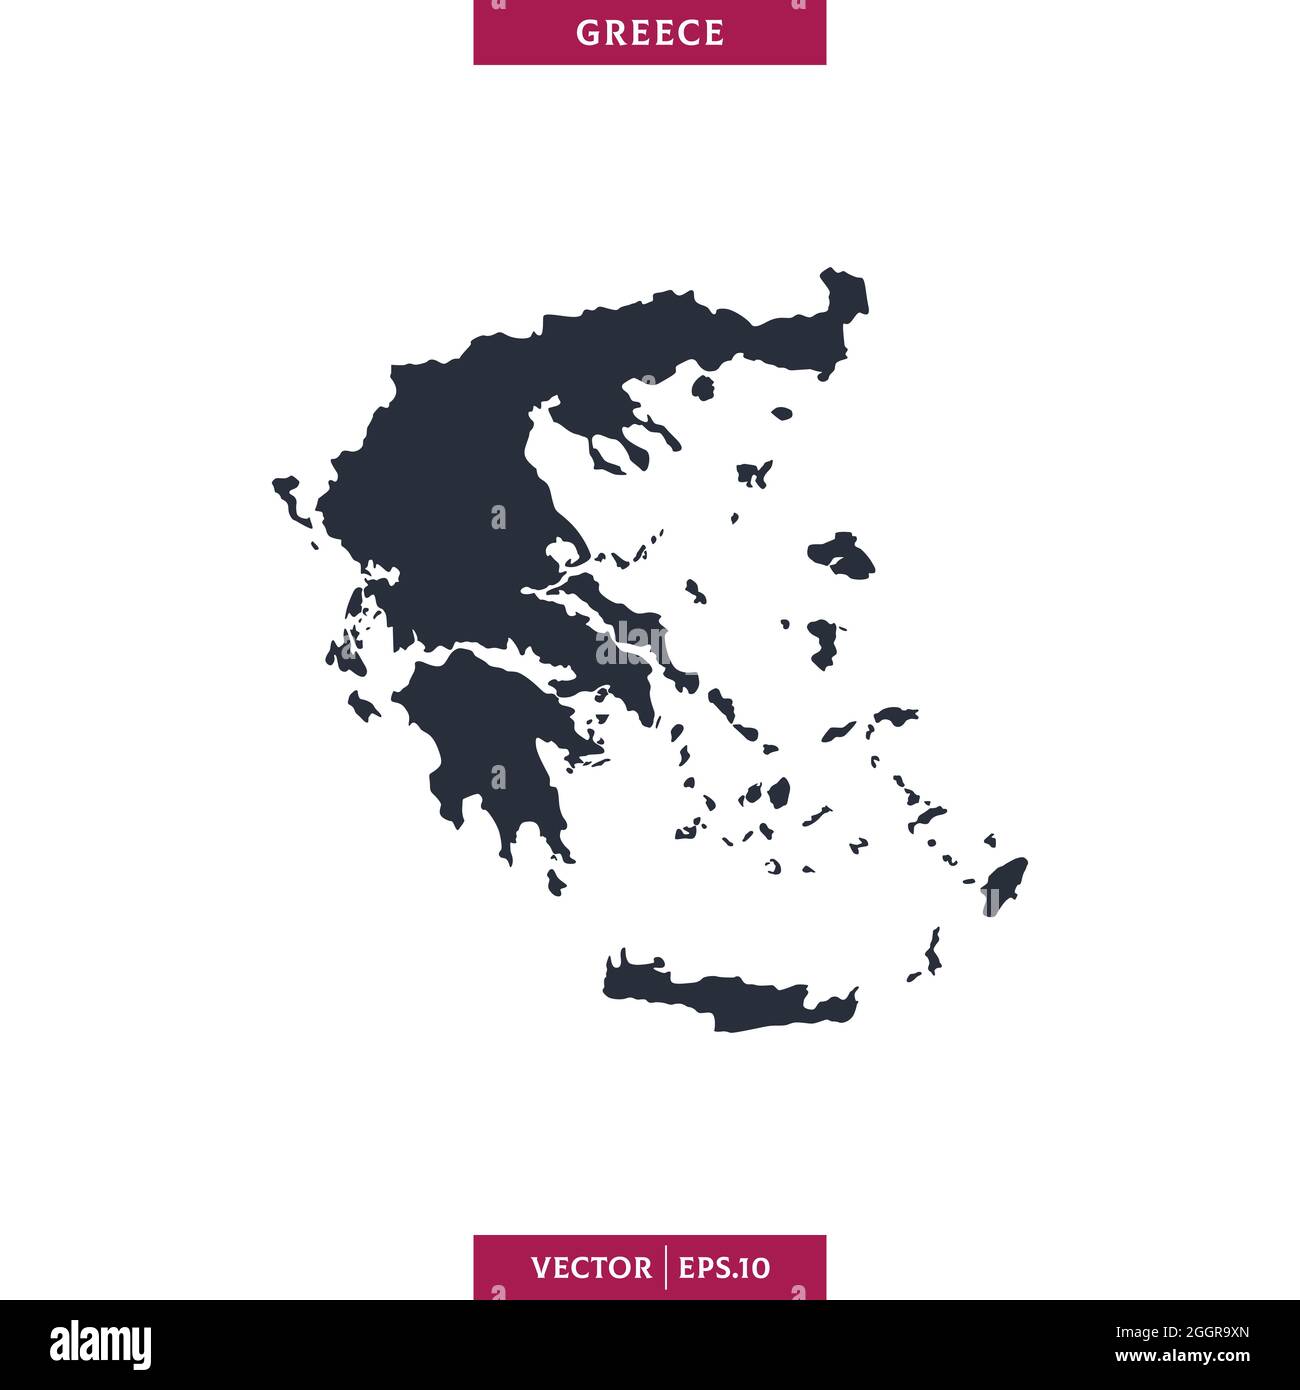 Mappa dettagliata del modello di disegno di illustrazione di stock vettoriale della Grecia. Vettore eps 10. Illustrazione Vettoriale